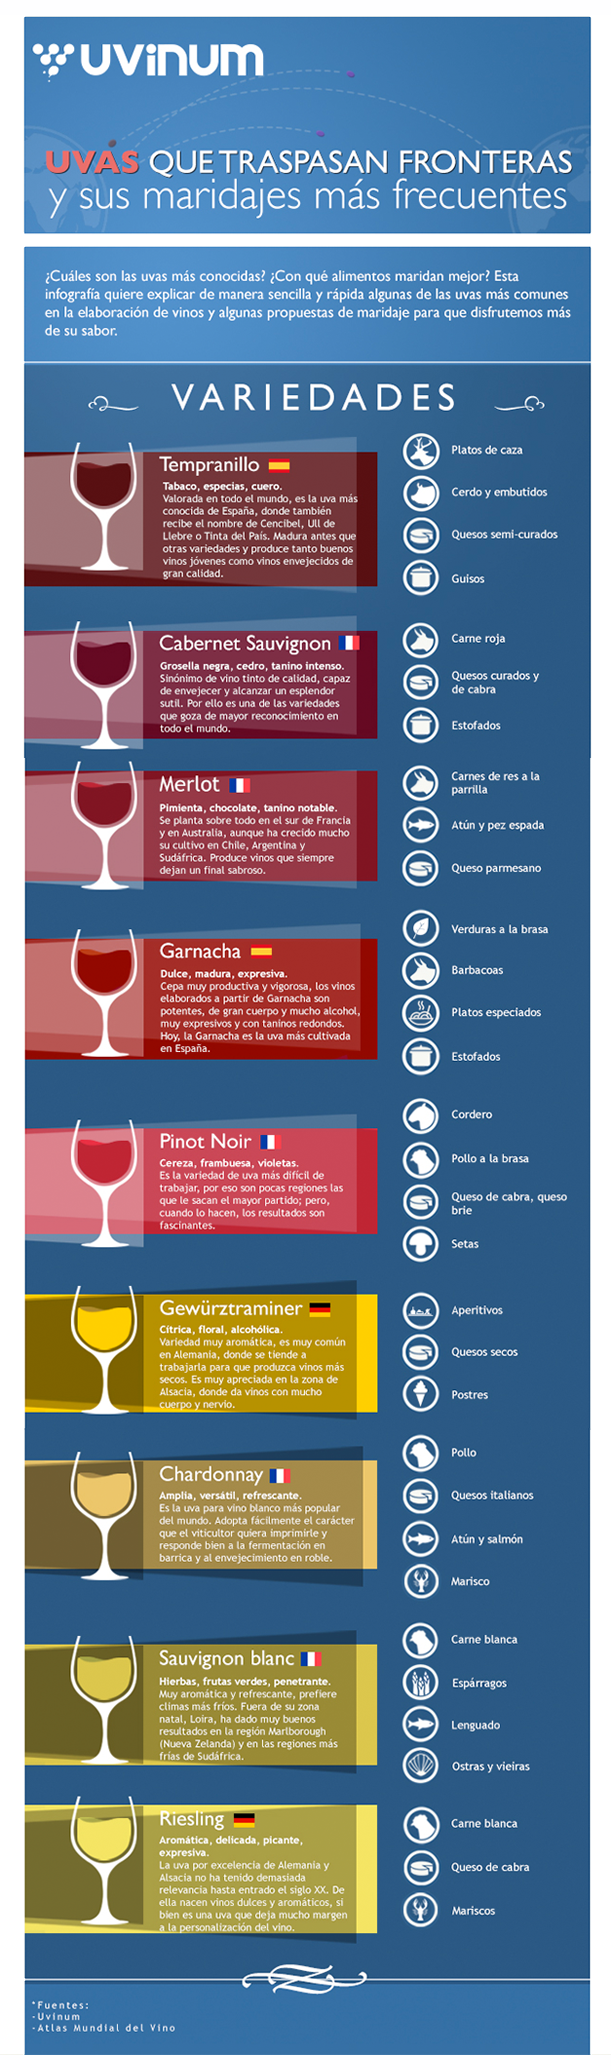 Infografía: "Uvas que traspasan fronteras" 0